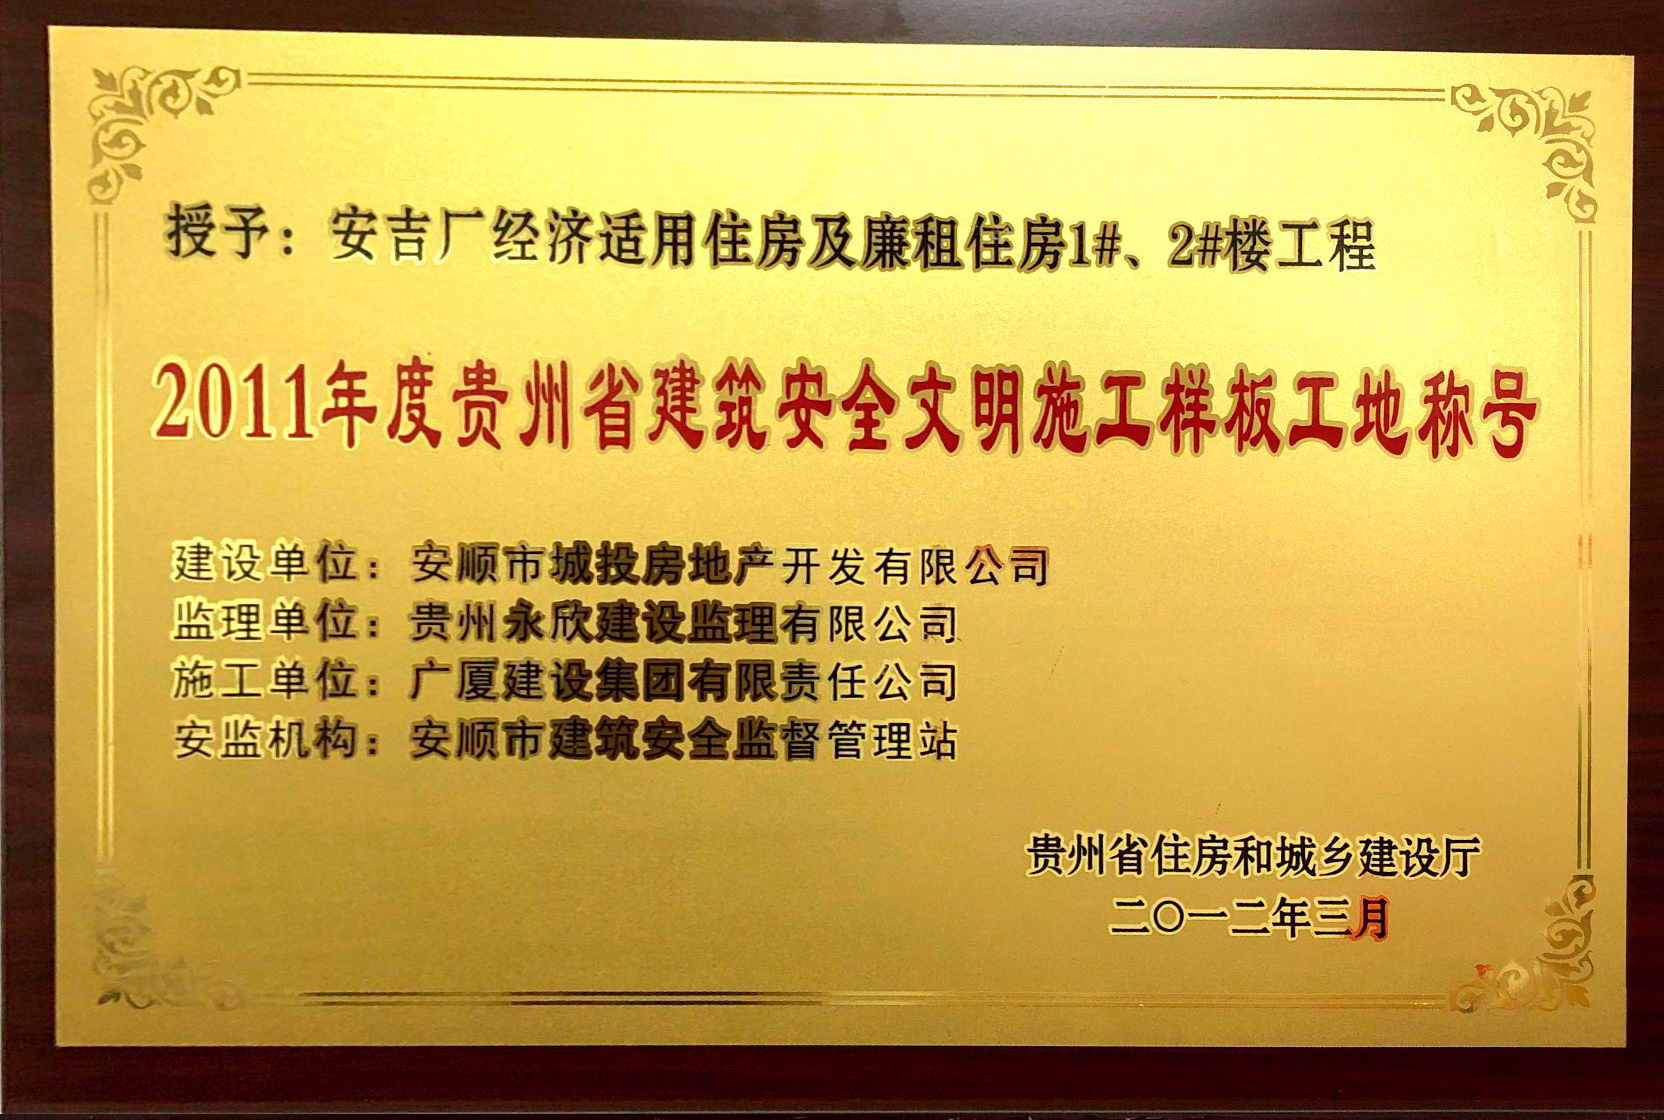 2011年度贵州省建筑安全文明施工样板工地称号